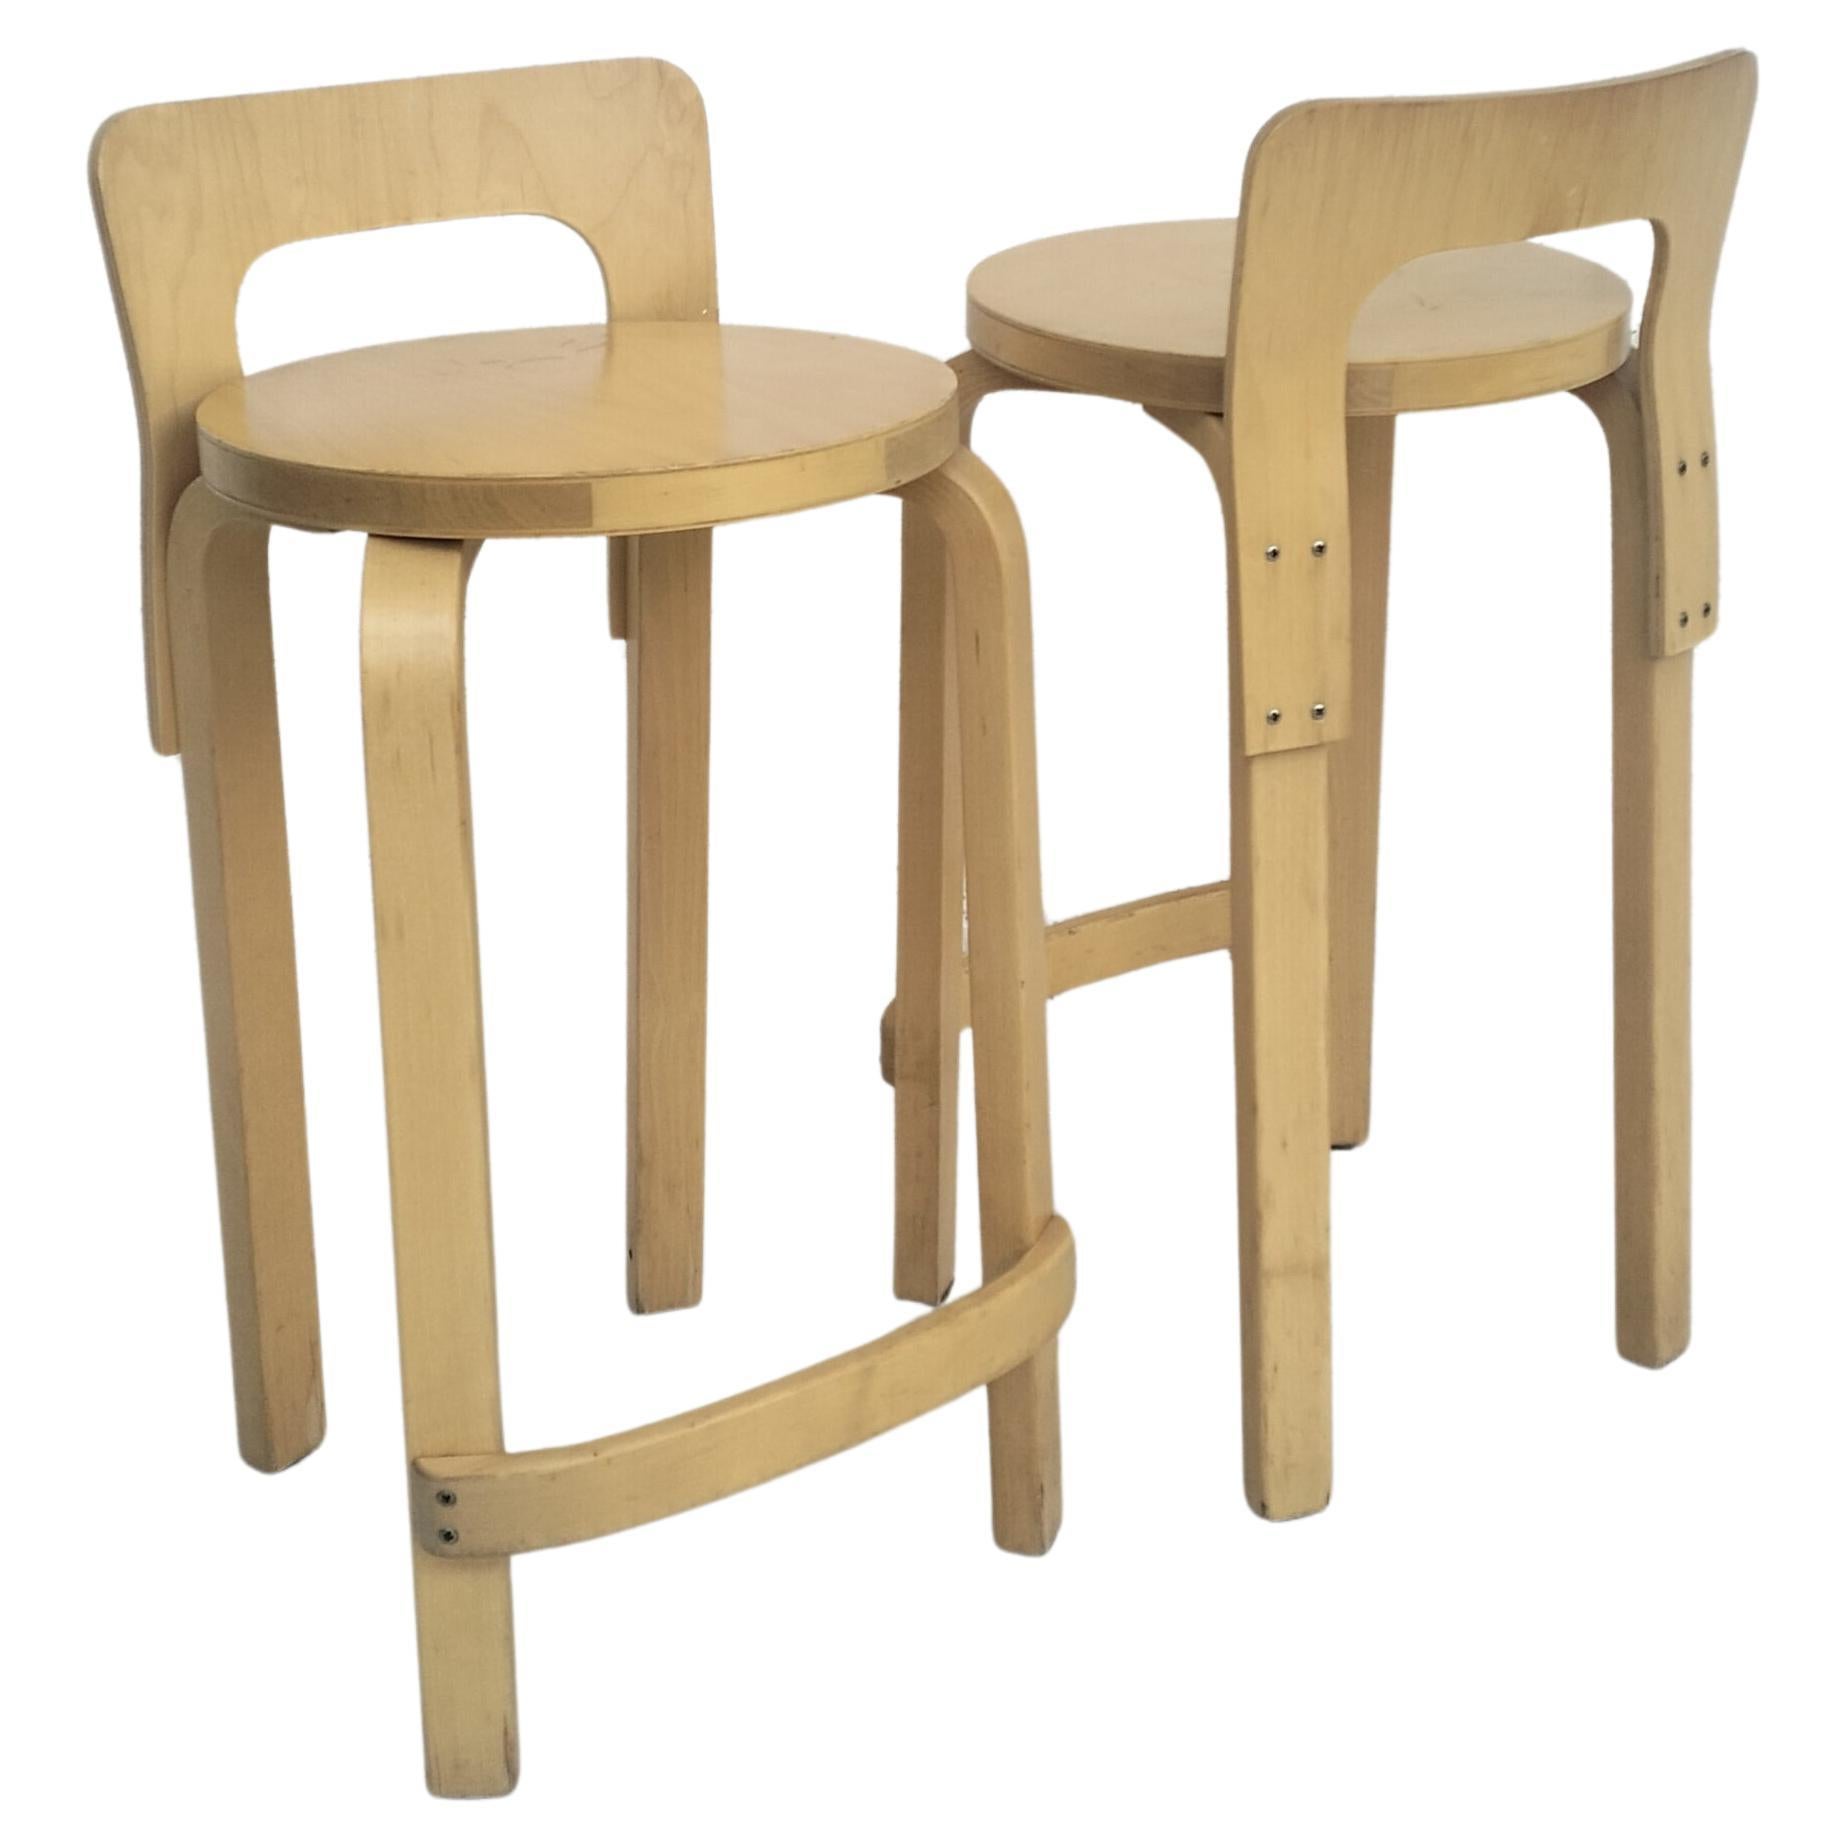 Set of 2 wooden stools k65 model by Alvar Aalto for Artek  60's